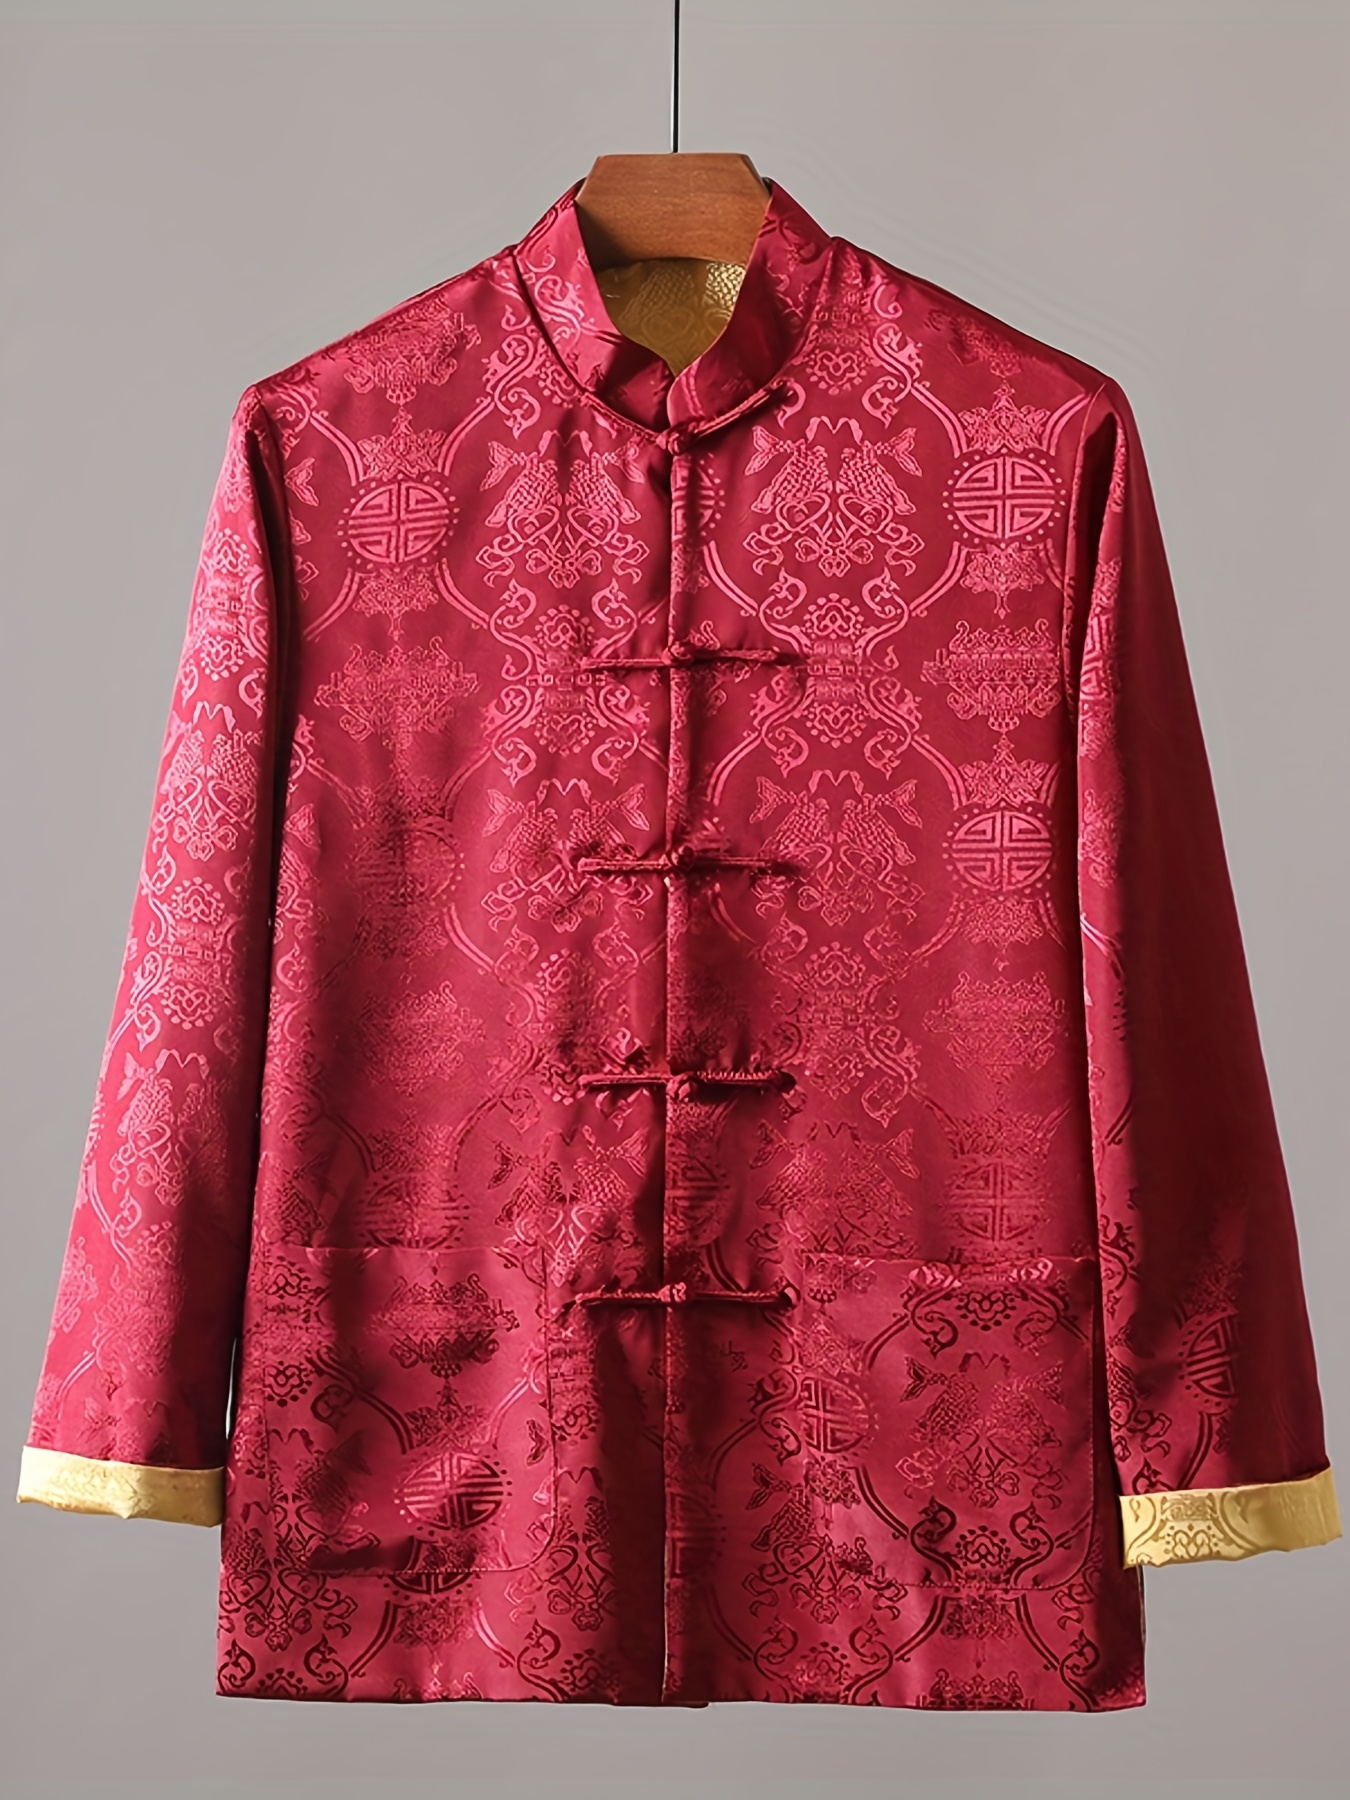 Chilaba marroquí tradicional de rayas rojas, una de las prendas para hombre  marroquíes más populares